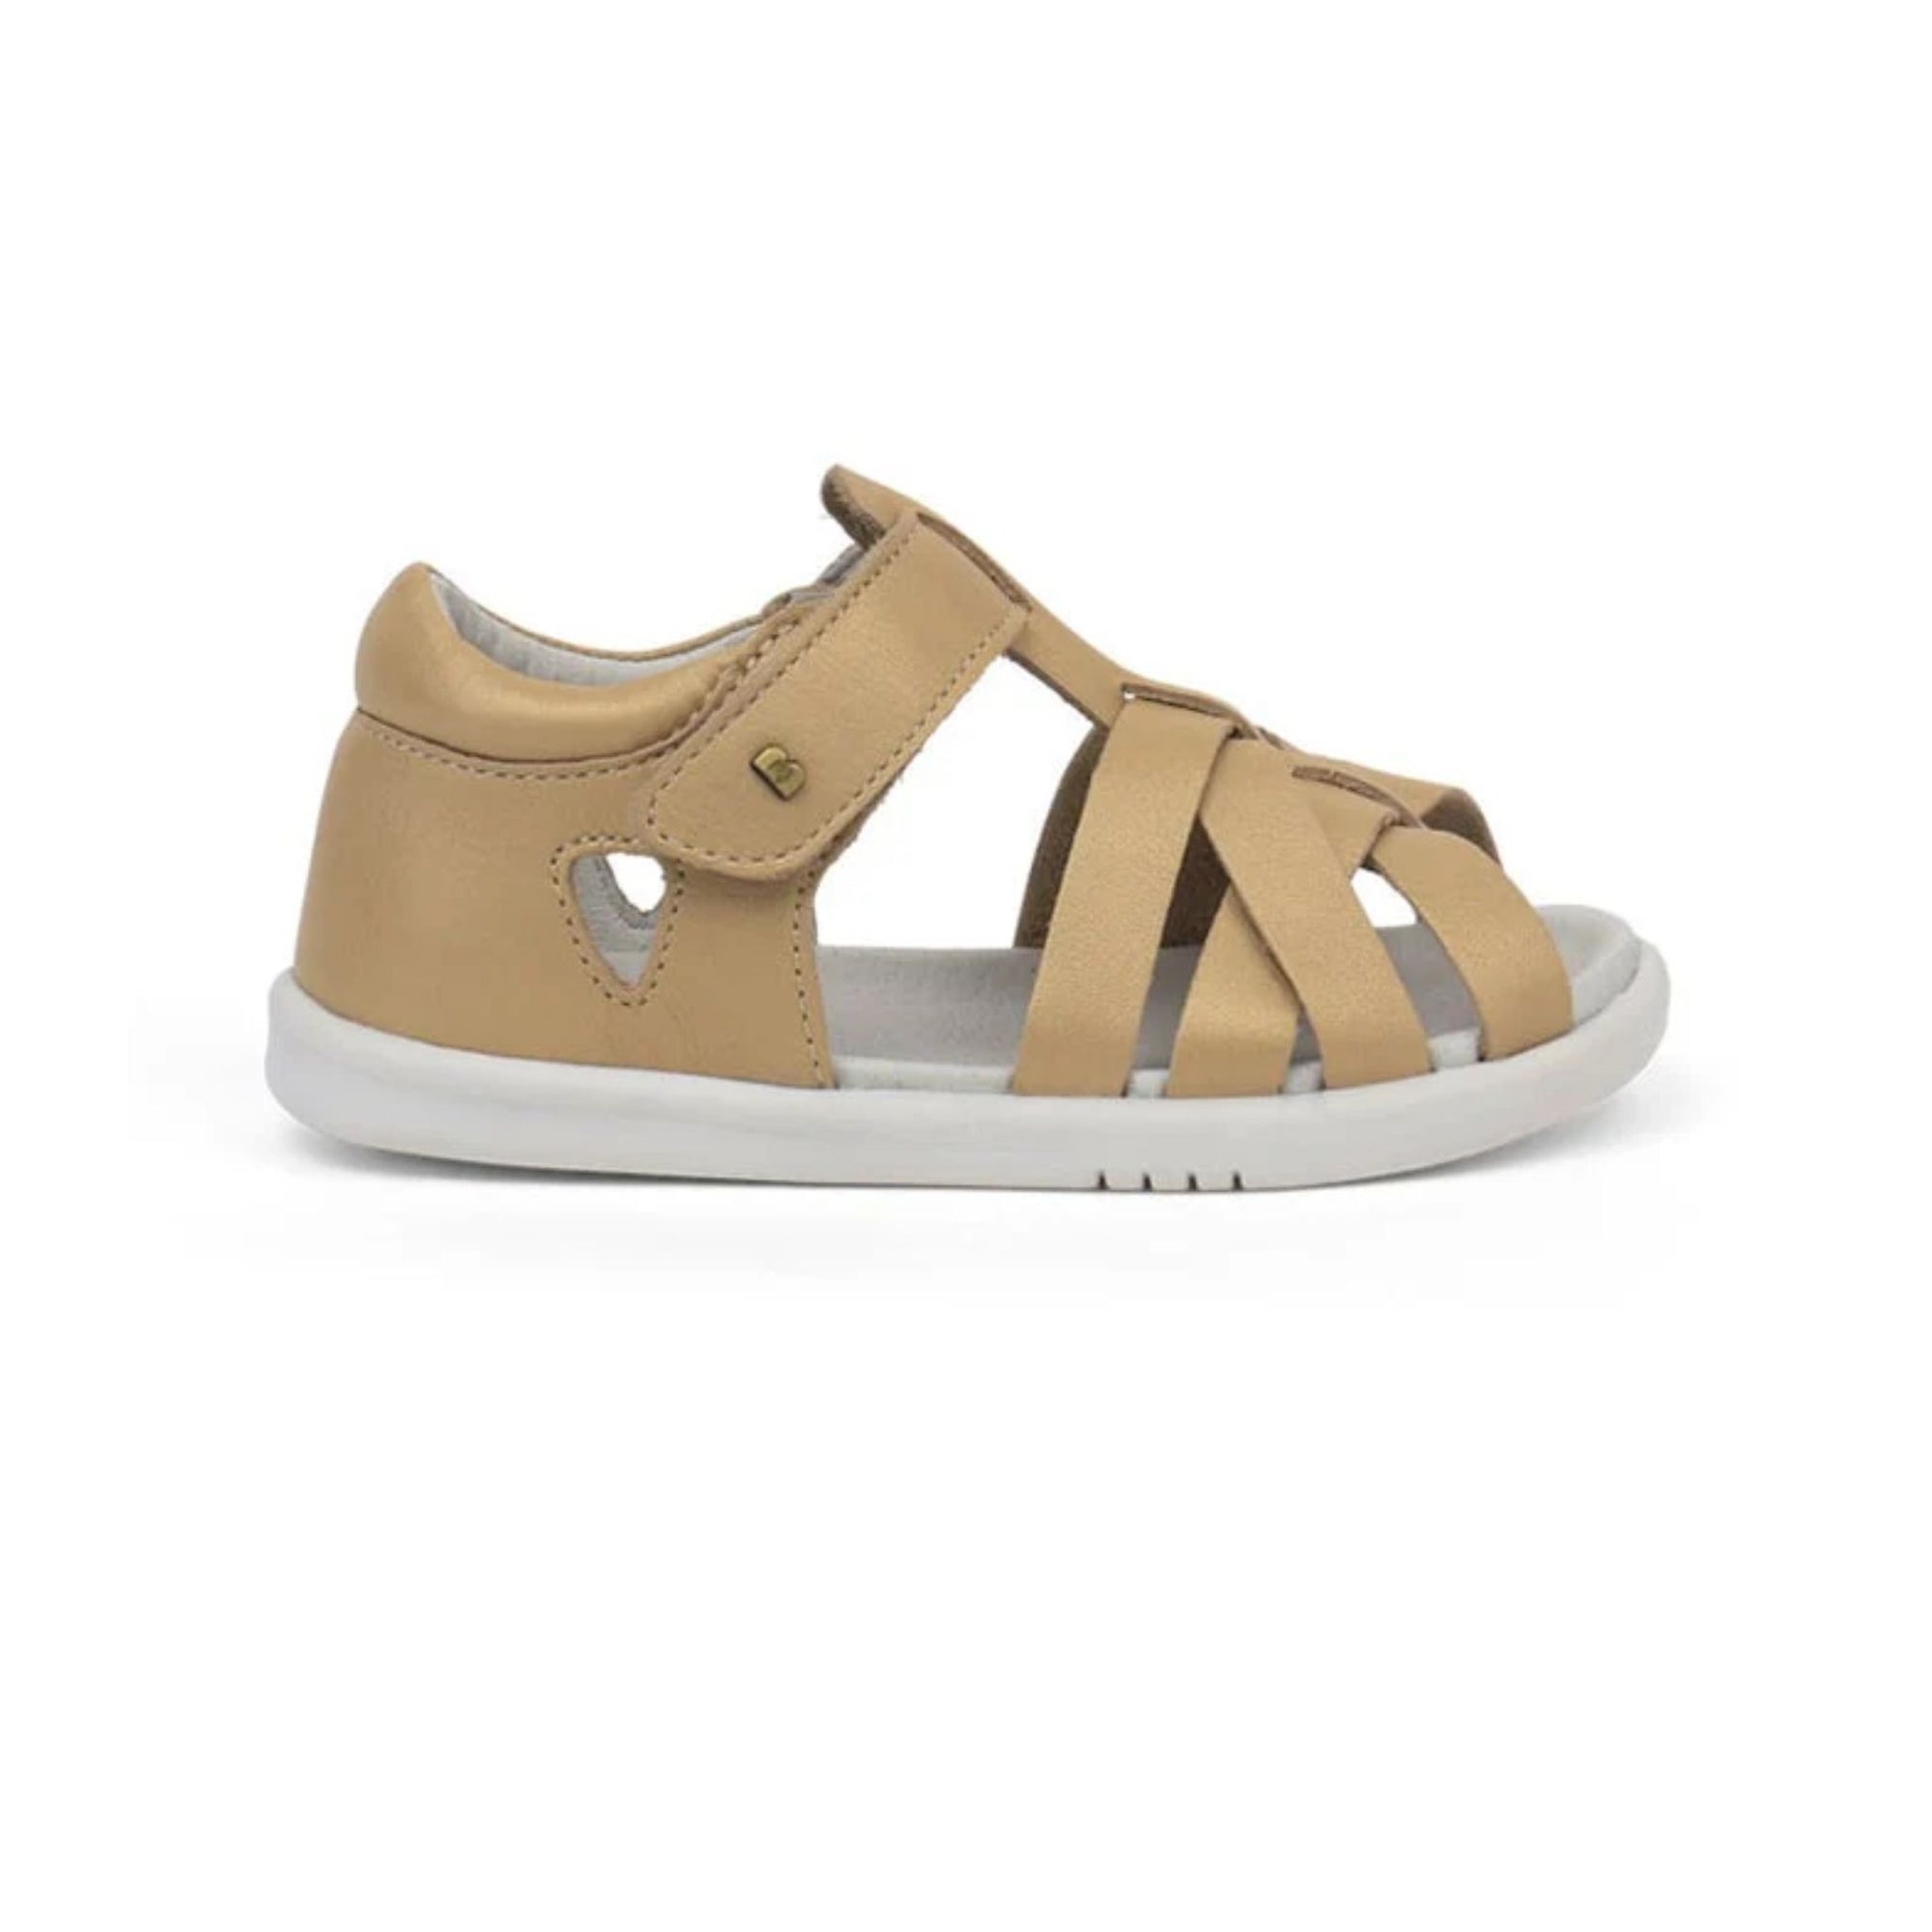 Bobux Gold Tropicana II Sandals i-Walk